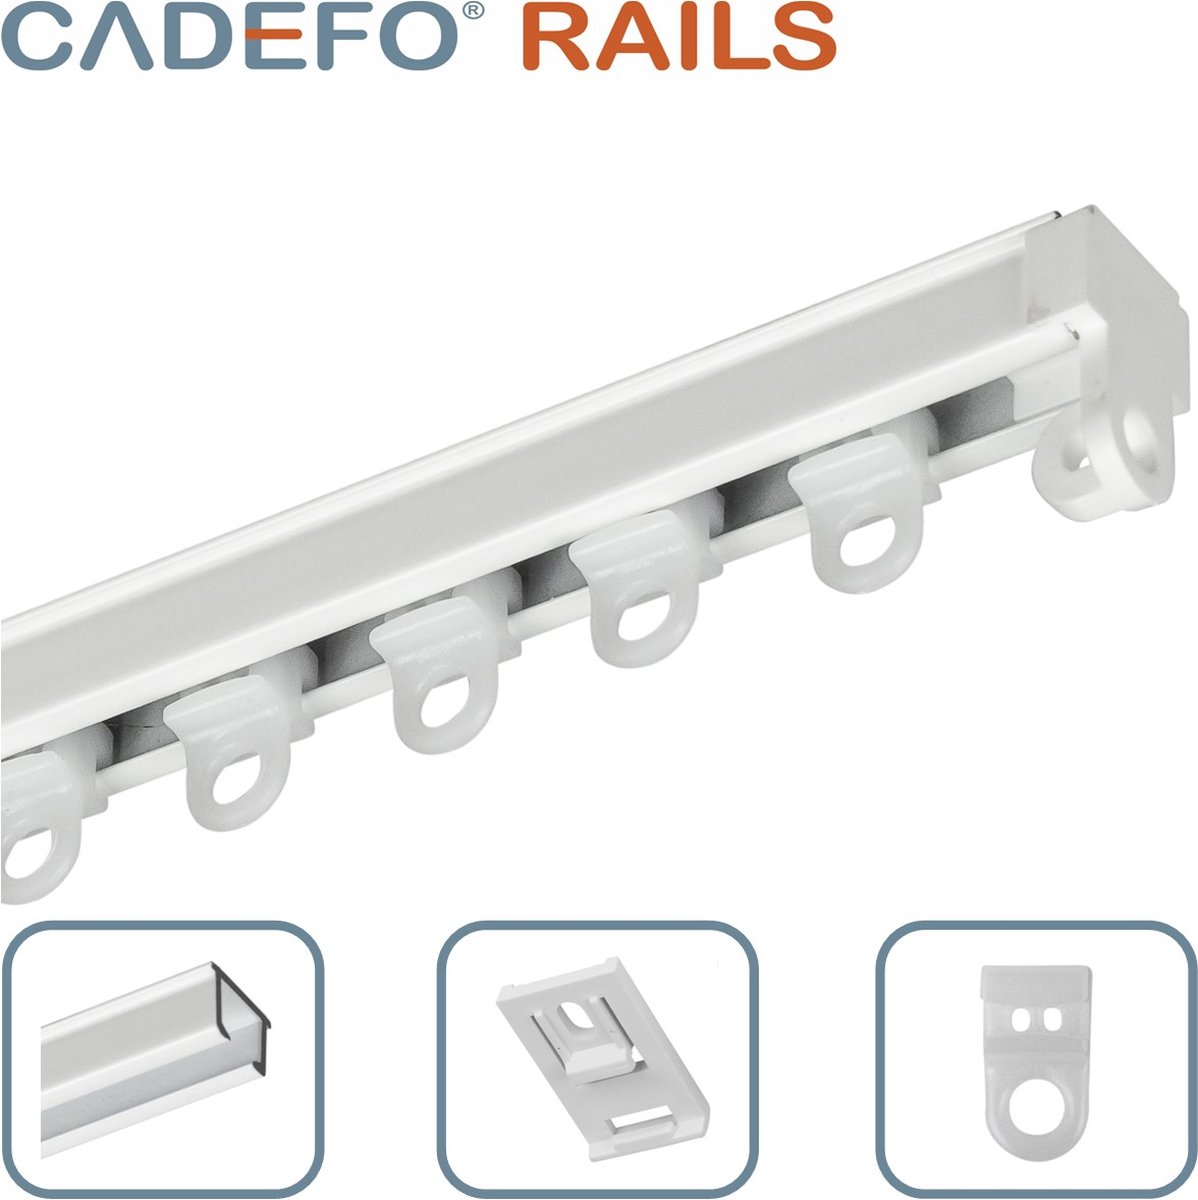 CADEFO RAILS (151 - 200 cm) Gordijnrails - Compleet op maat! - UIT 1 STUK - Leverbaar tot 6 meter - Plafondbevestiging - Lengte 196 cm